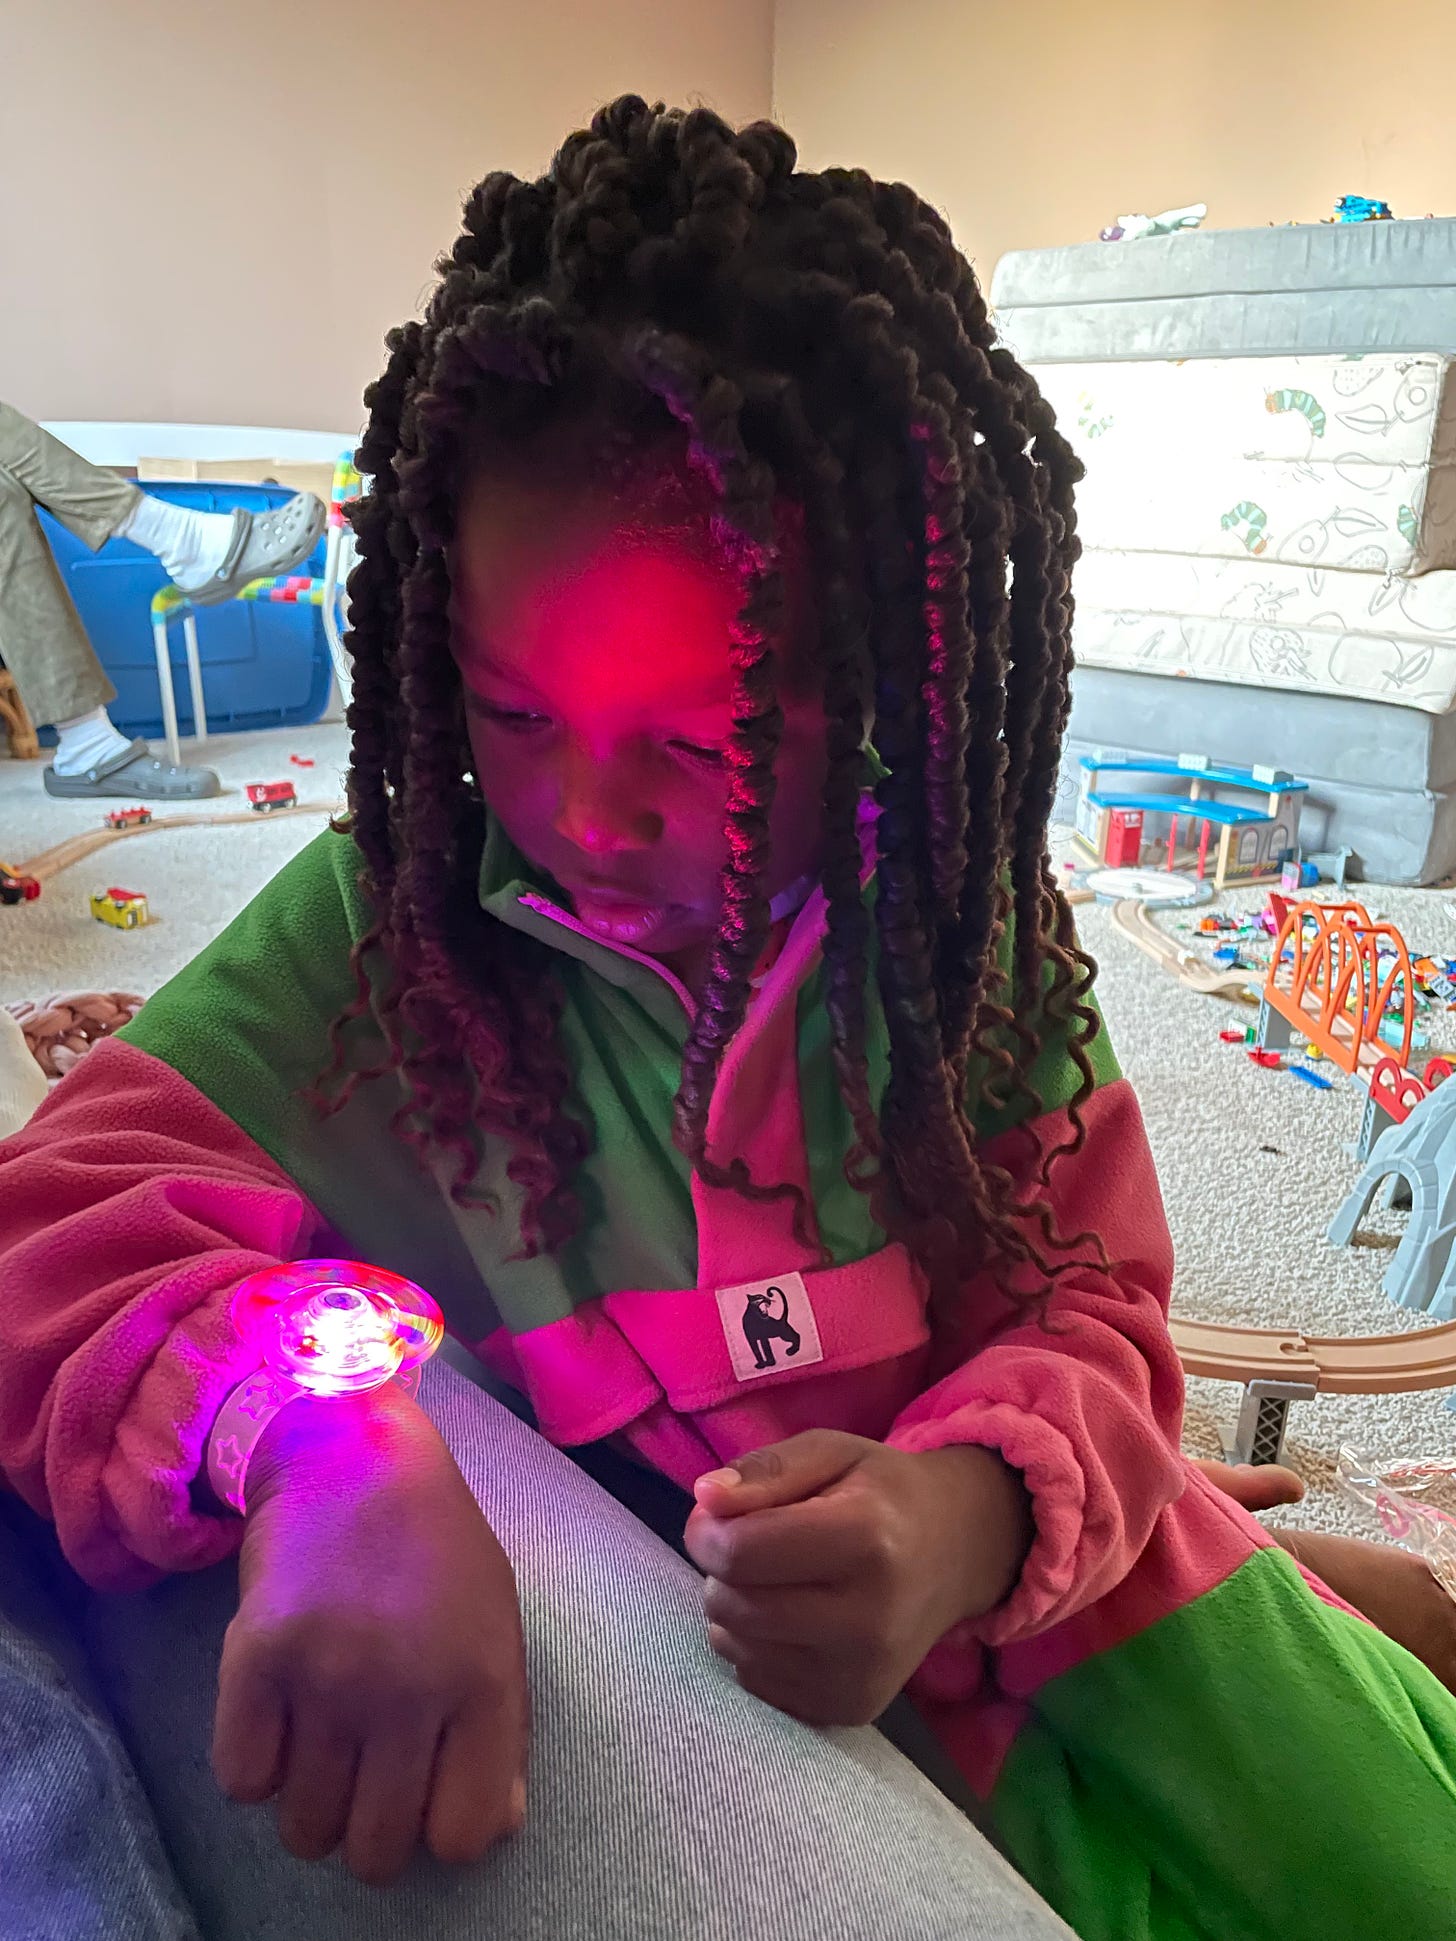 A Black child tries on a light-up bracelet